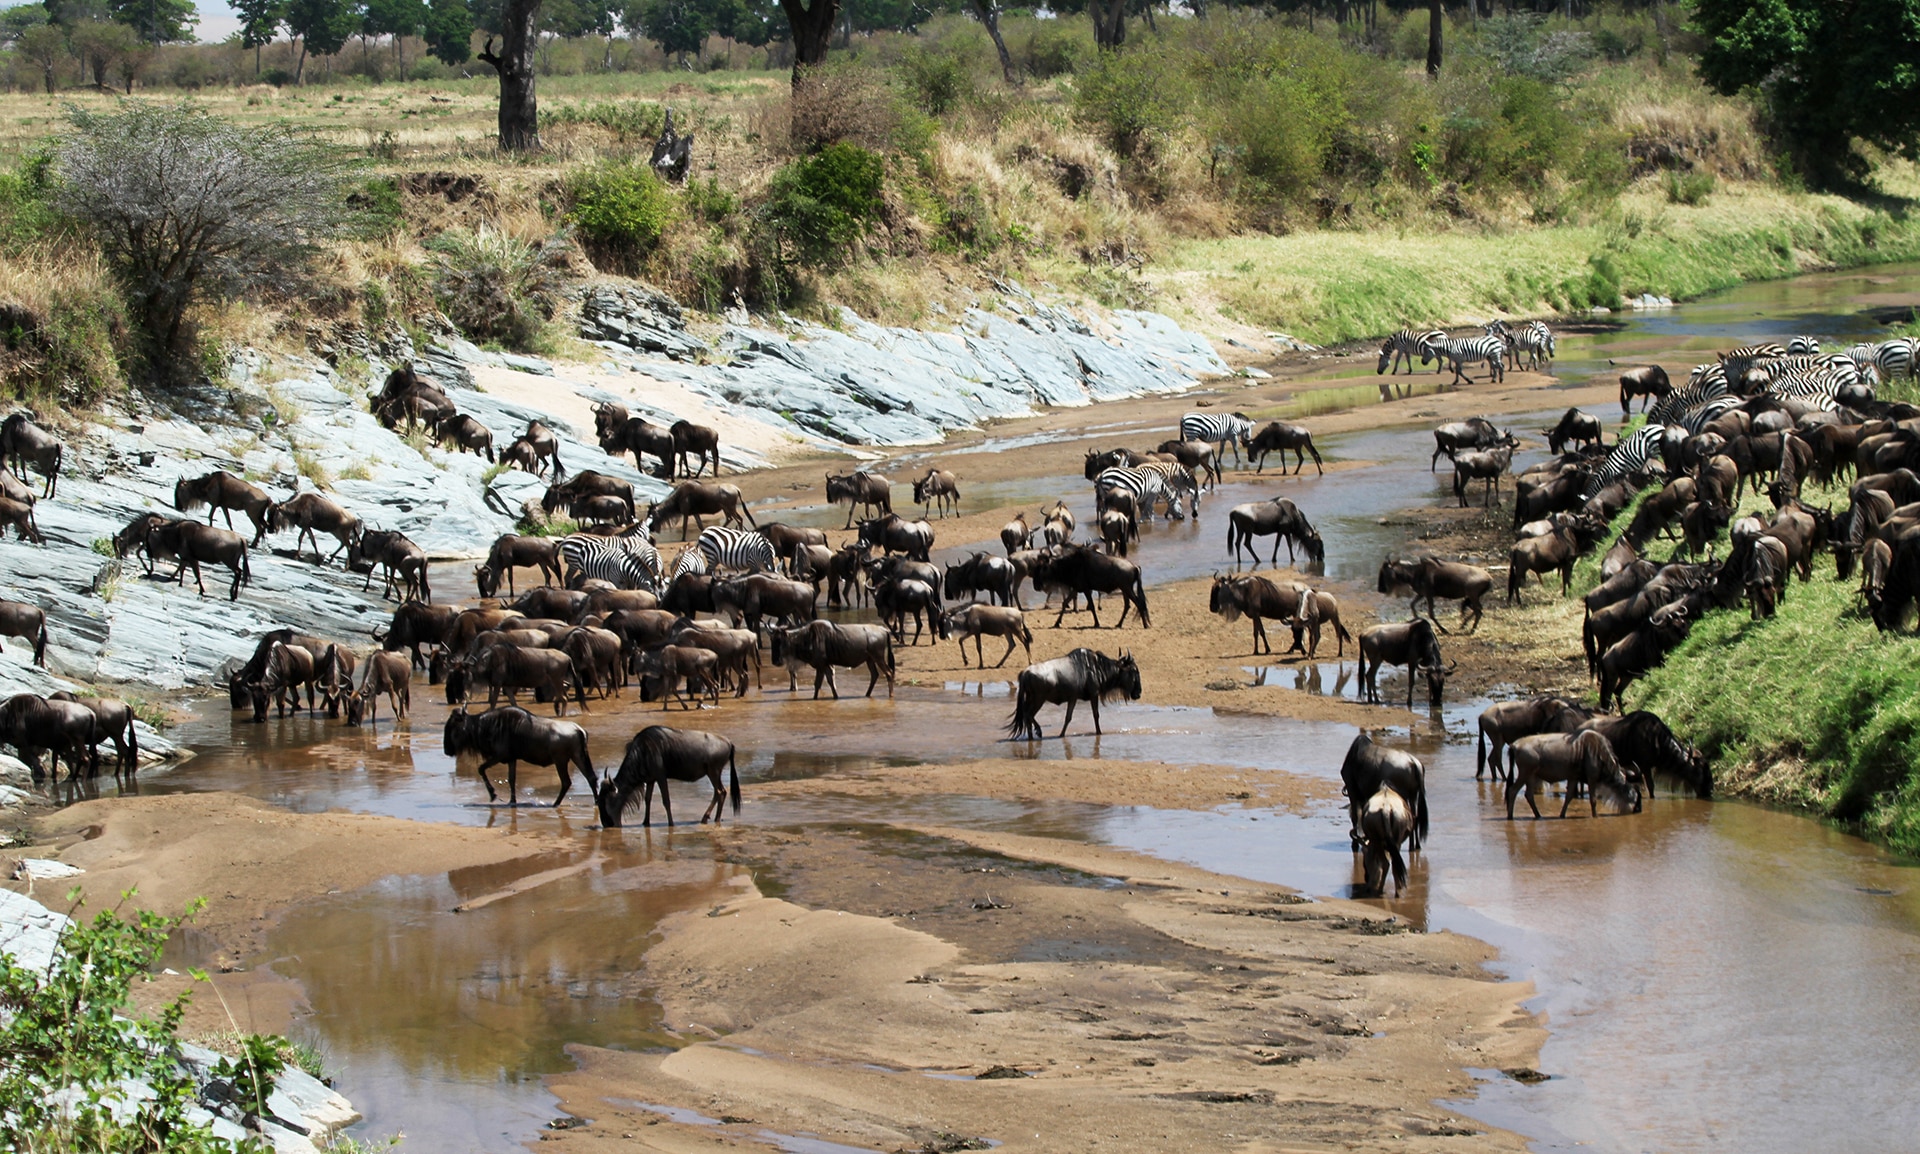 Grumeti river crossing begins in the western Serengeti